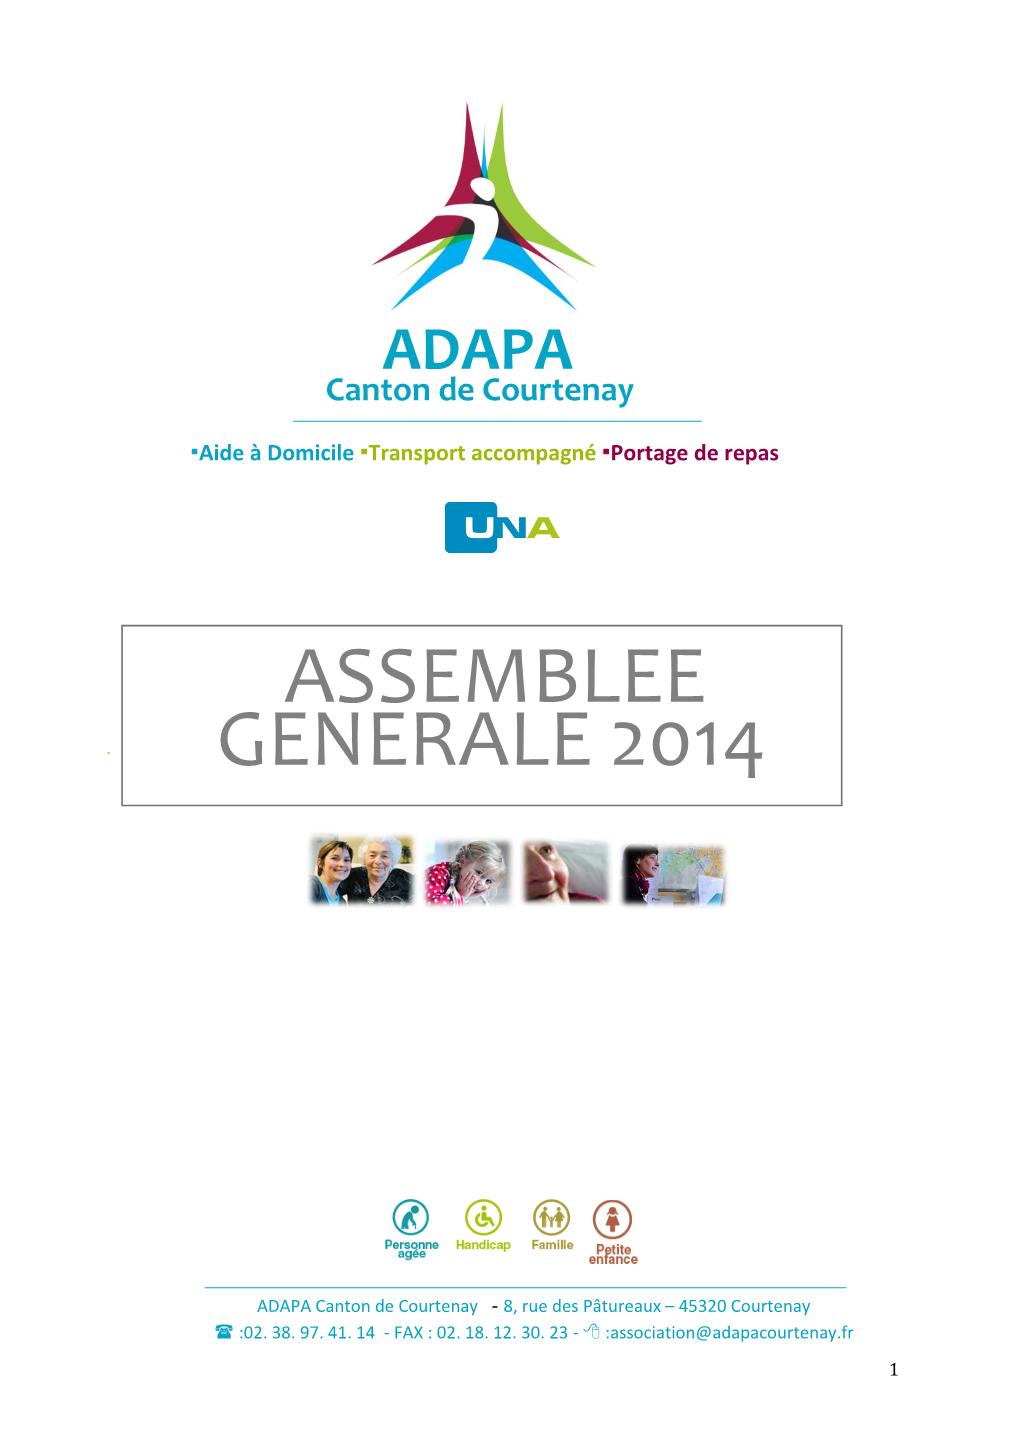 Assemblee Generale 2014